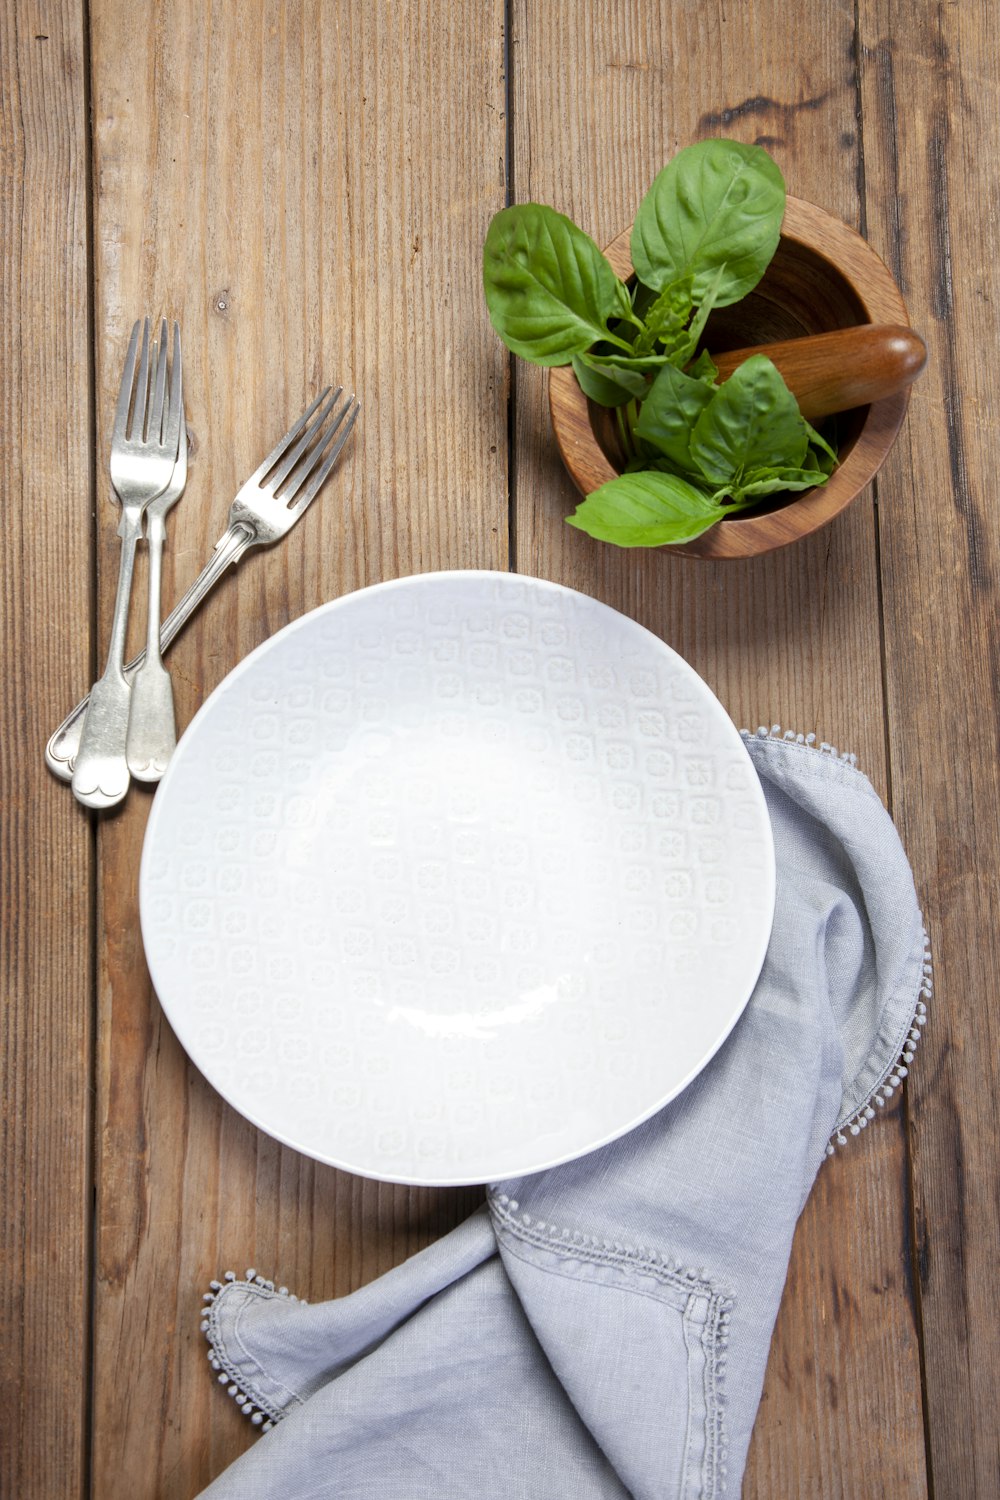 Plato de cerámica blanca junto al tenedor de acero inoxidable y el cuchillo de pan